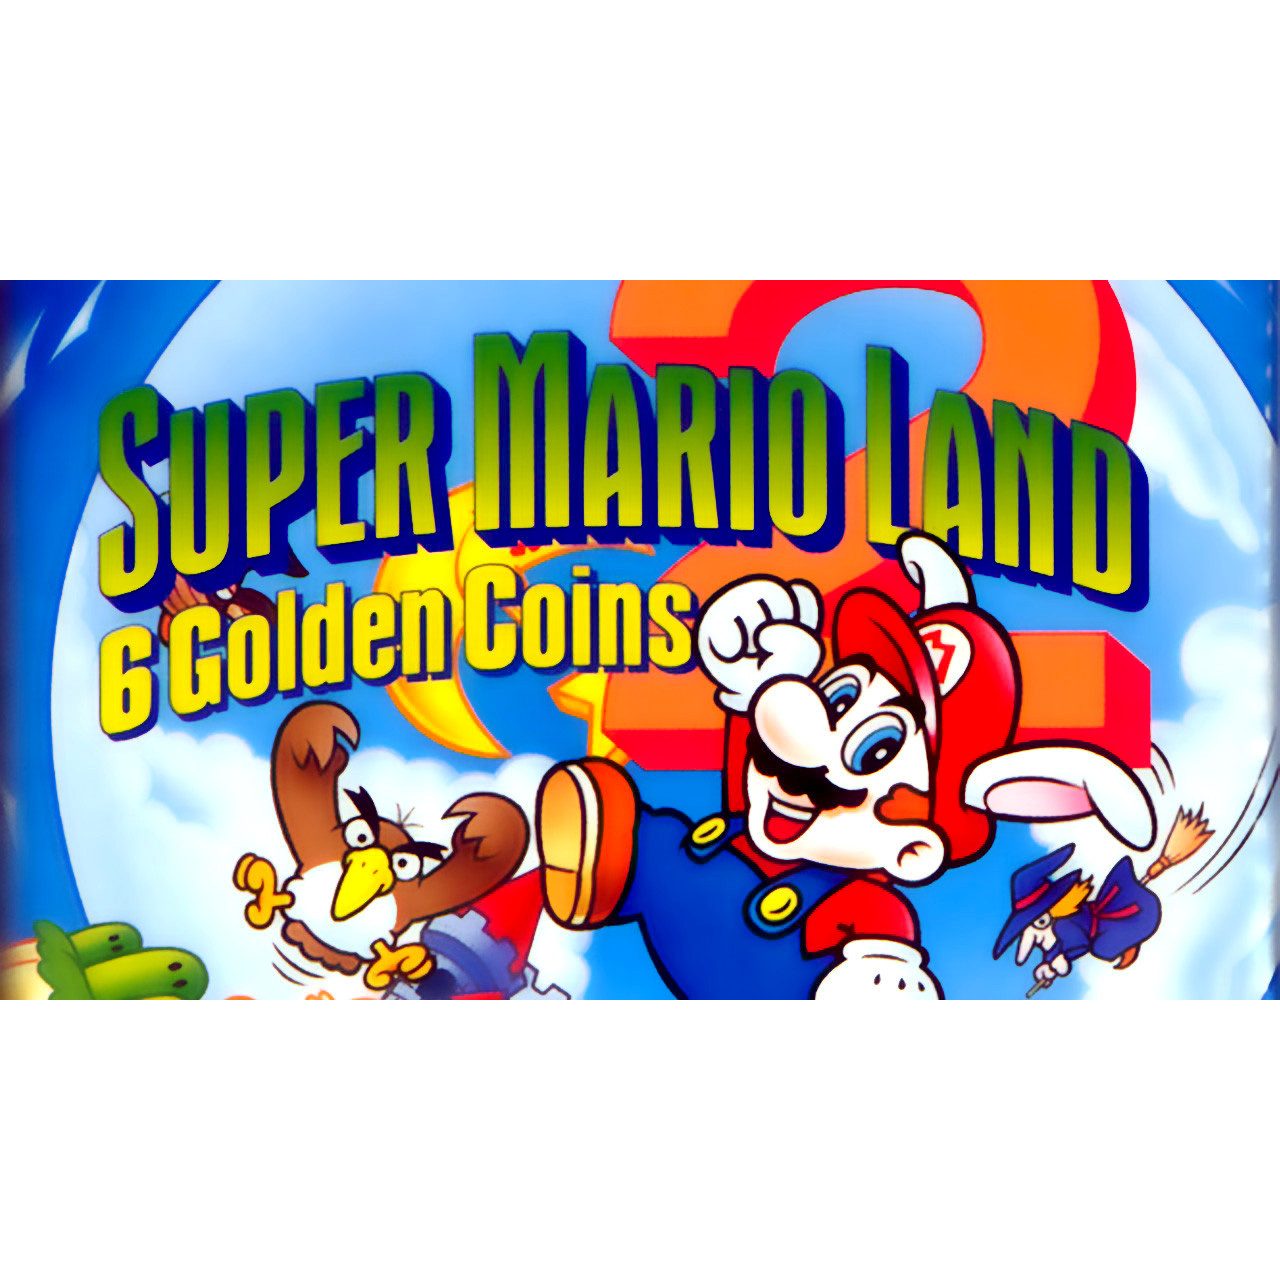 Super Mario Land 2: 6 Golden Coins